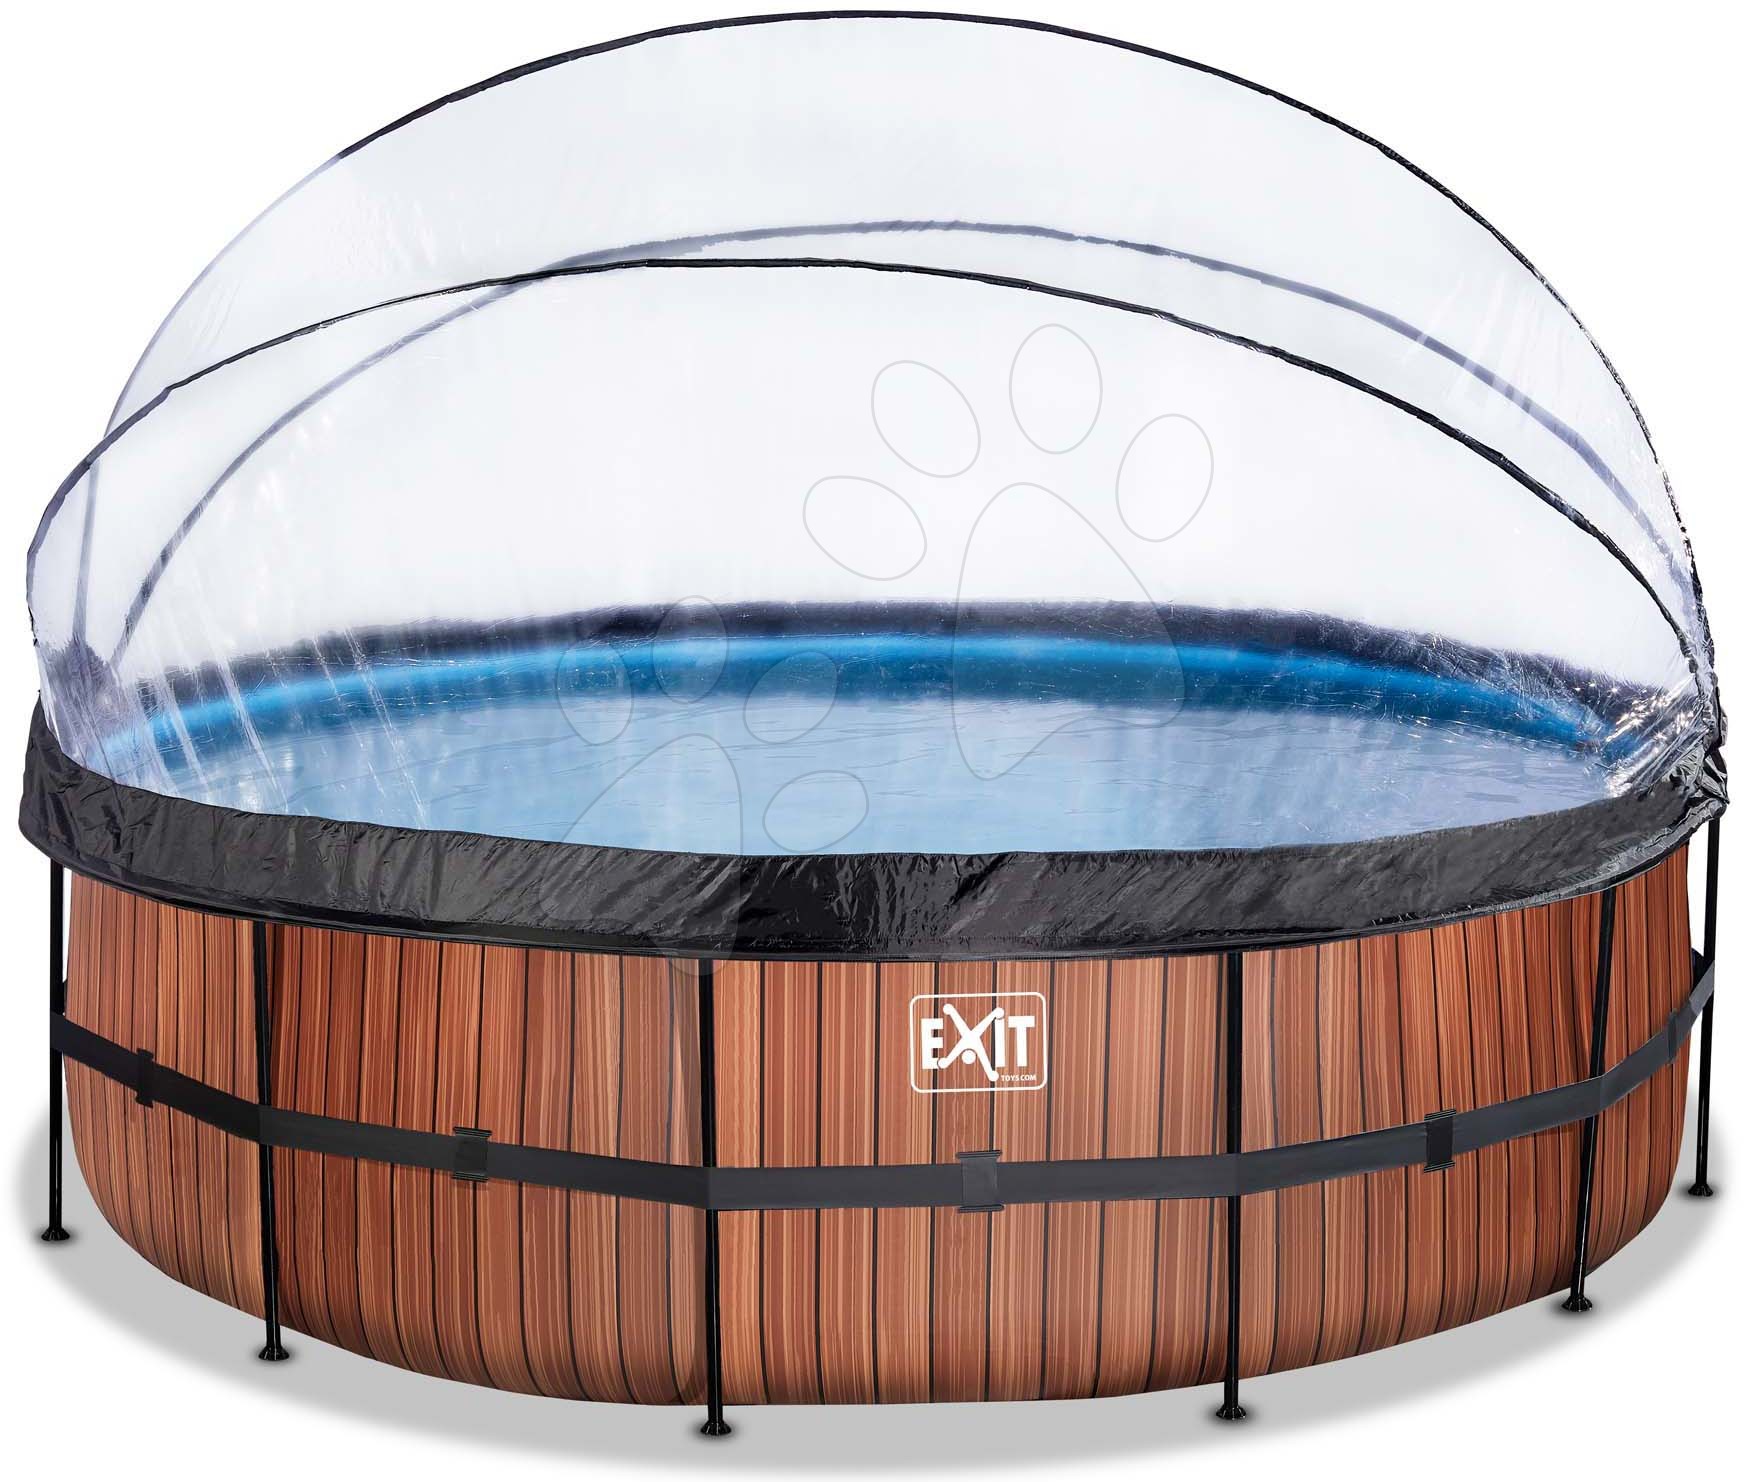 Bazén s krytom pieskovou filtráciou a tepelným čerpadlom Wood pool Exit Toys kruhový oceľová konštrukcia 488*122 cm hnedý od 6 rokov